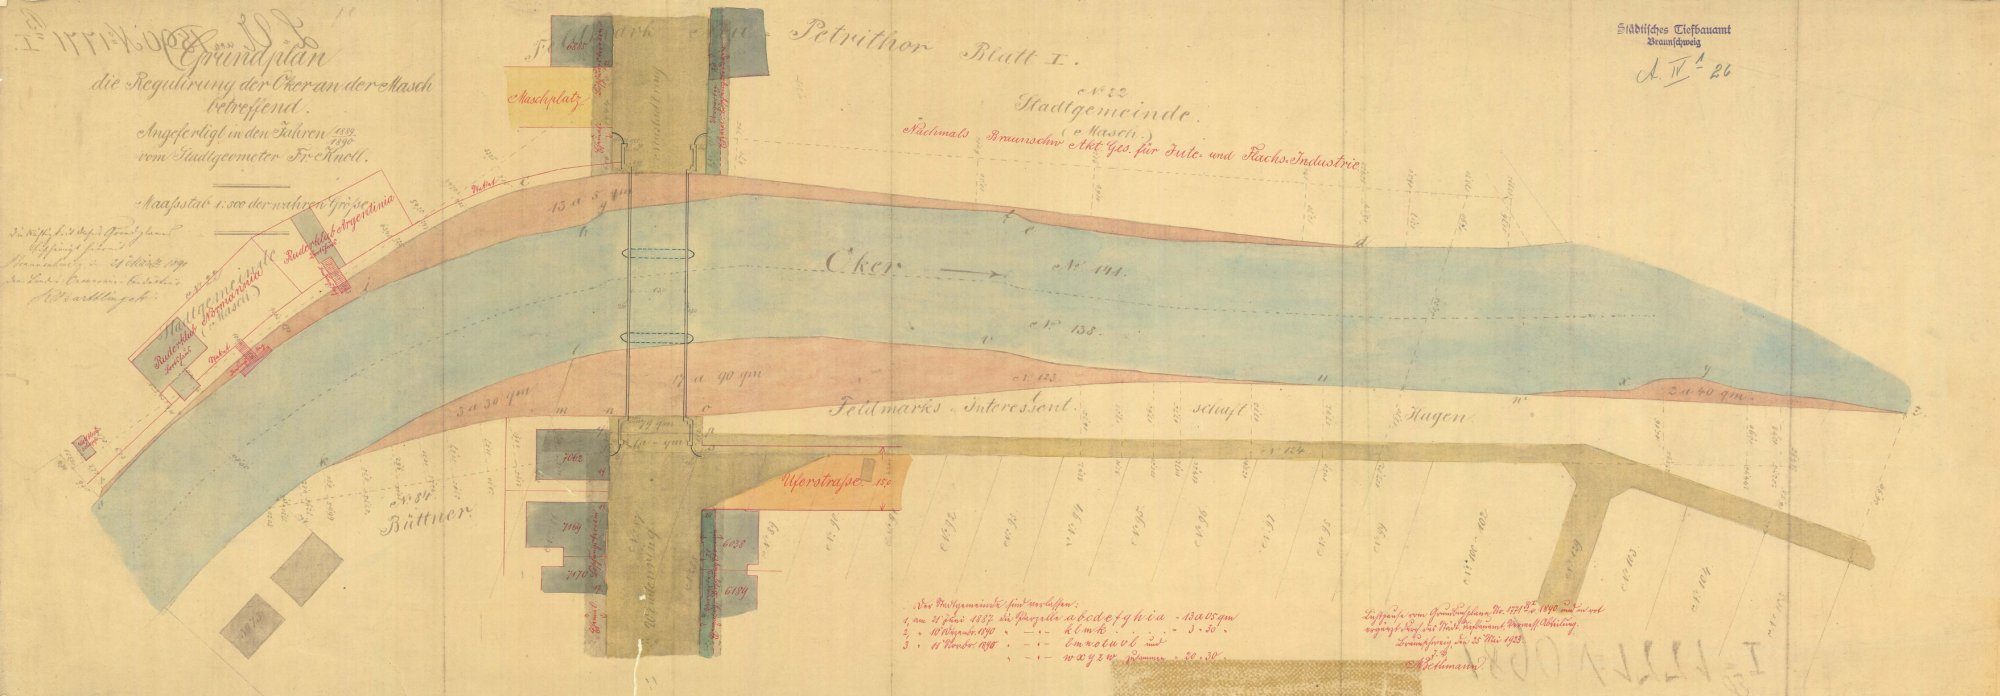 Wendenringbrücke, Planung des nördlichen Rings, Lageplan, 1890